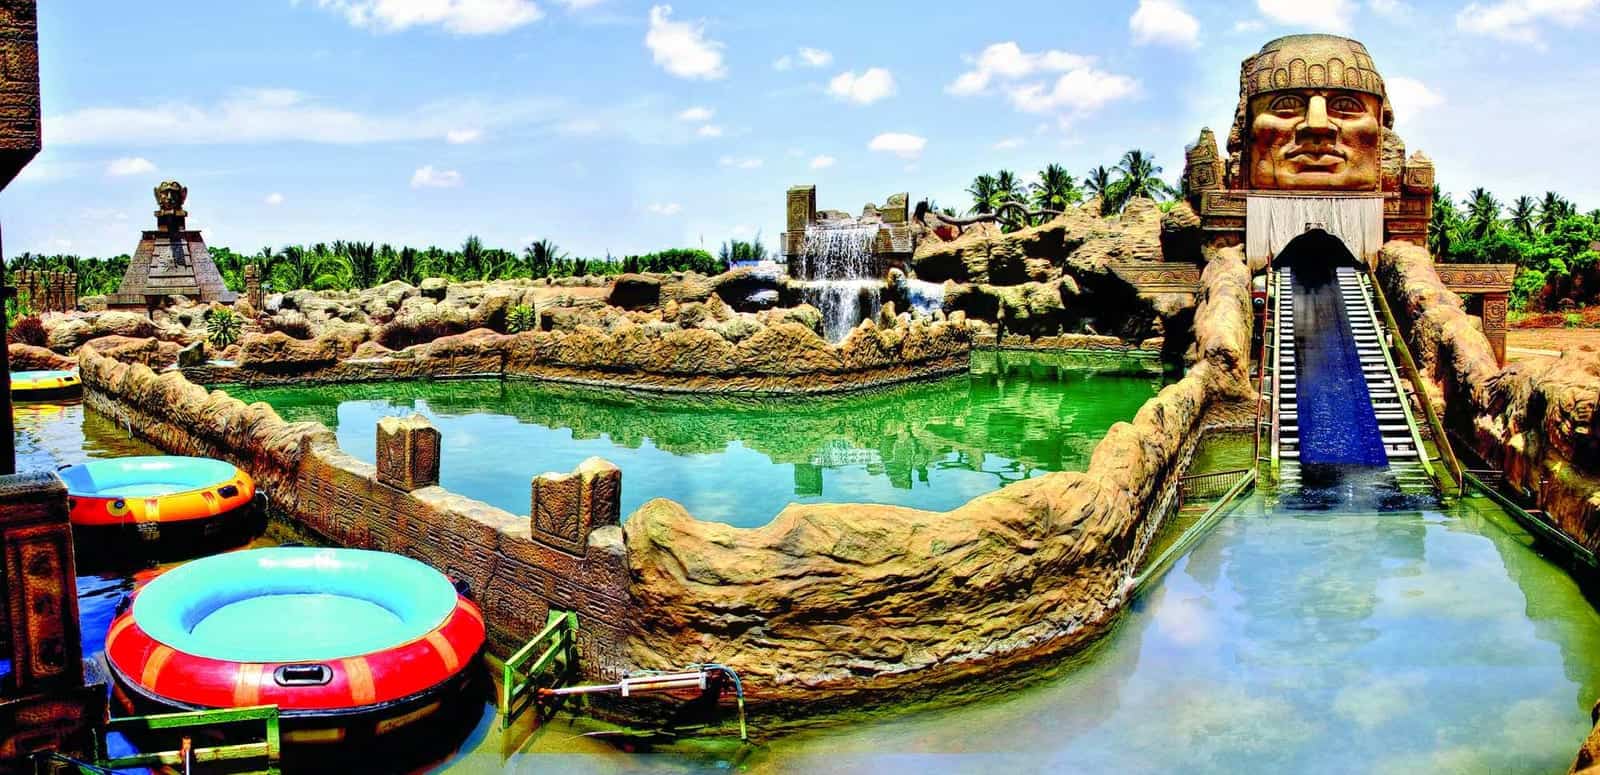 افضل 4 انشطة في حدائق لومبيني المائية بنجلور الهند